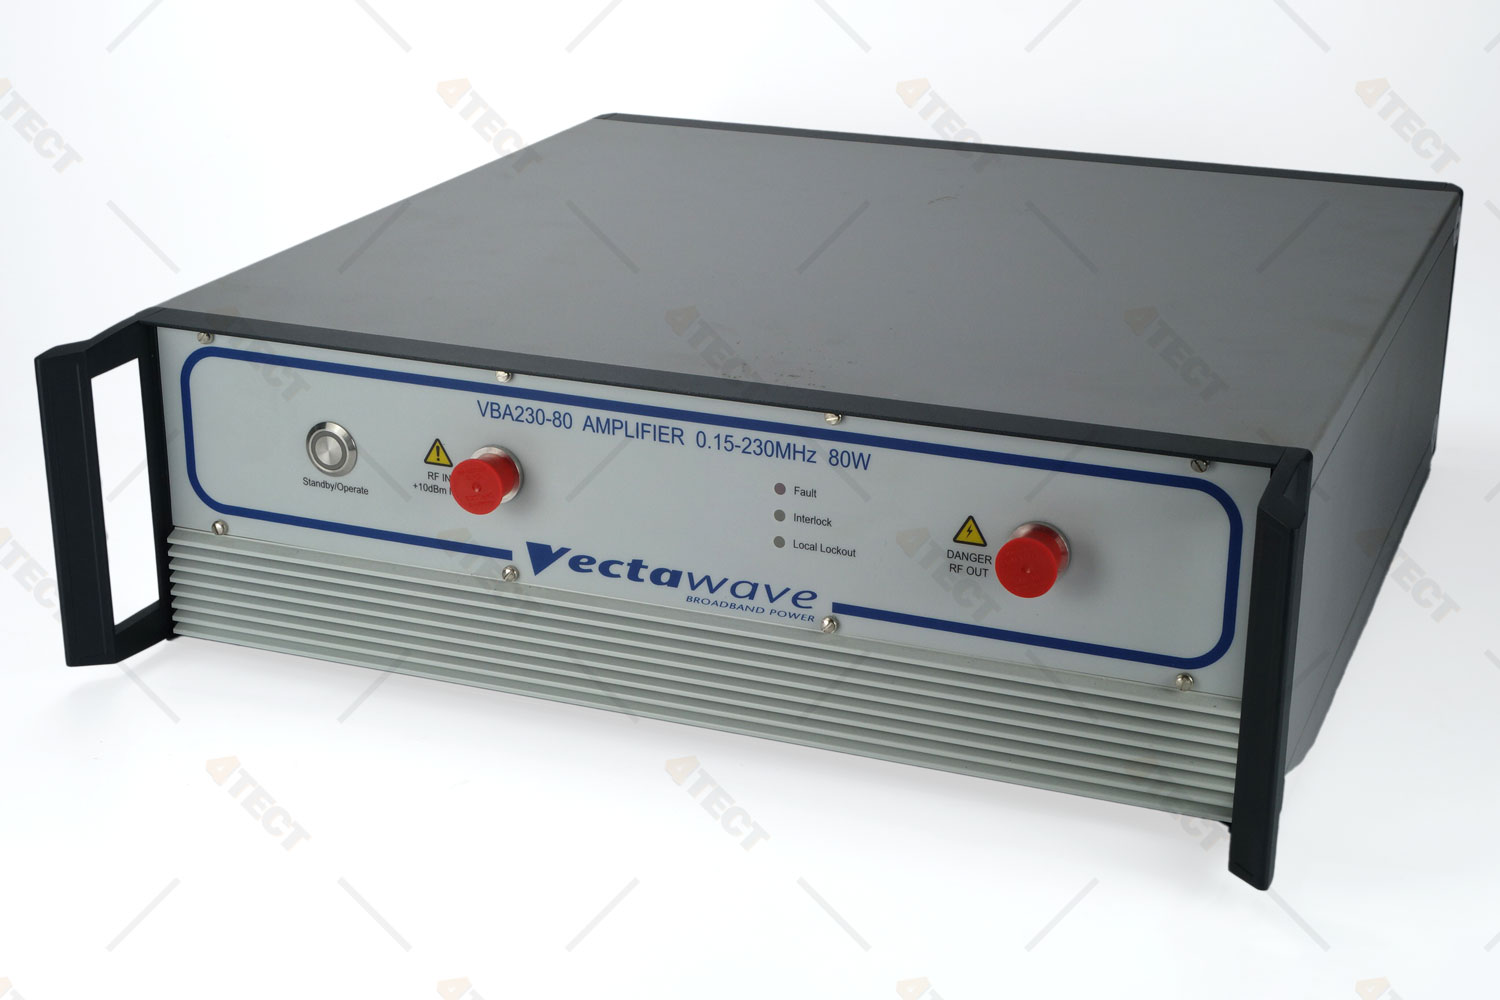 Усилитель мощности Vectawave VBA 230-80
 с диапазоном от 150 кГц до 230 МГц
 
 
 
 

 Стоимость указана в Рублях DDP Москва по безналичному расчету включая НДС 20%
